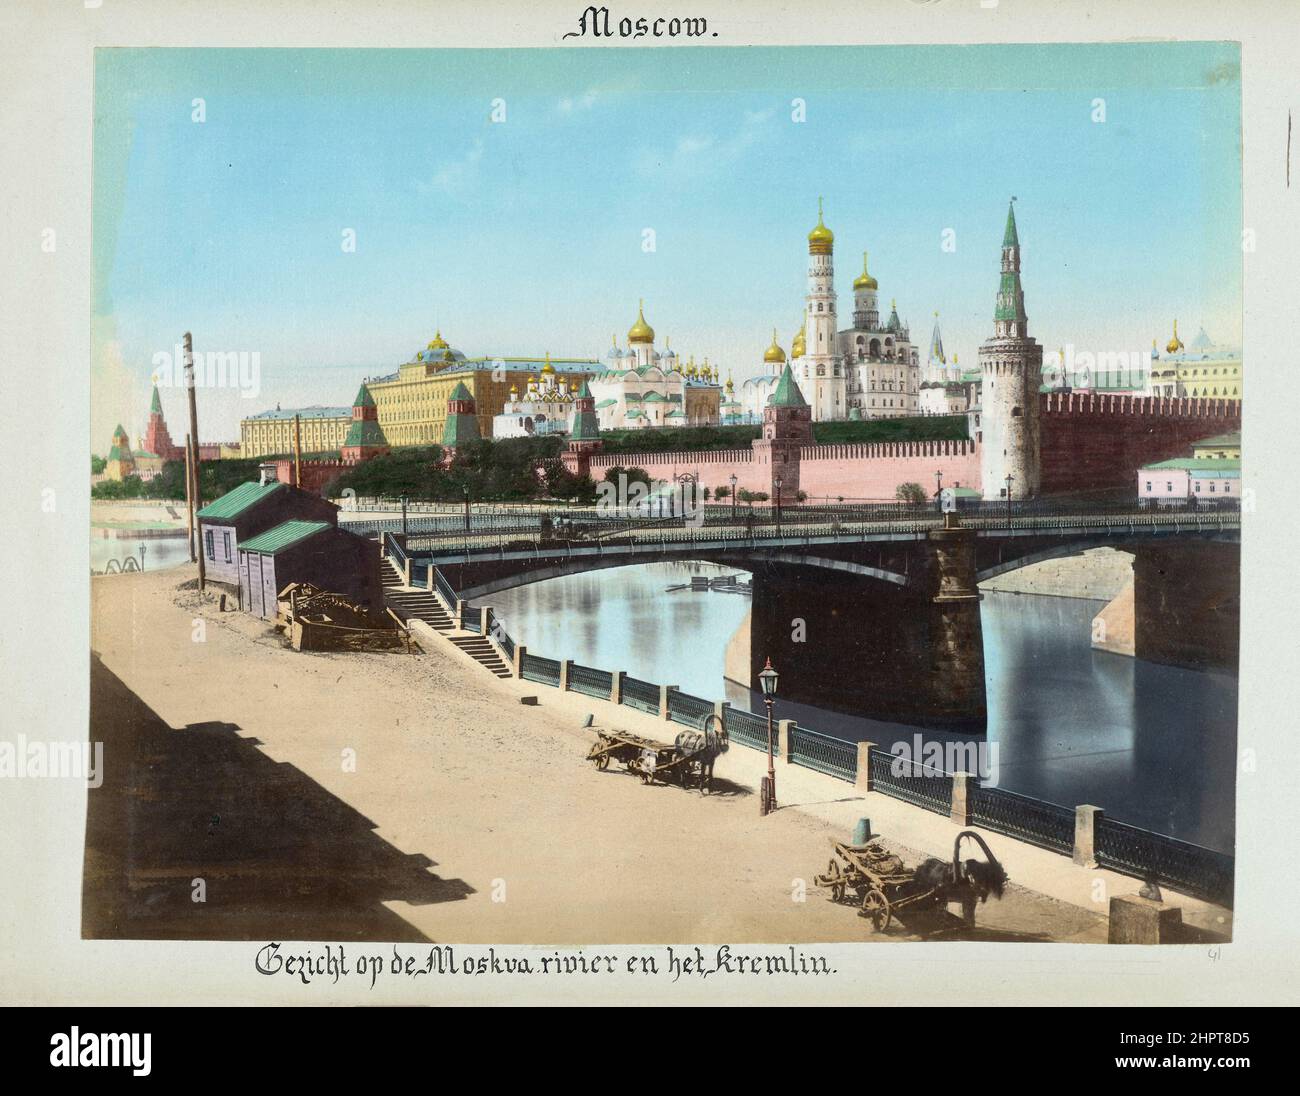 Vintage-Foto des Moskauer Kremls von der Moskvoretsky-Brücke. Russisches Reich. 1898 Stockfoto